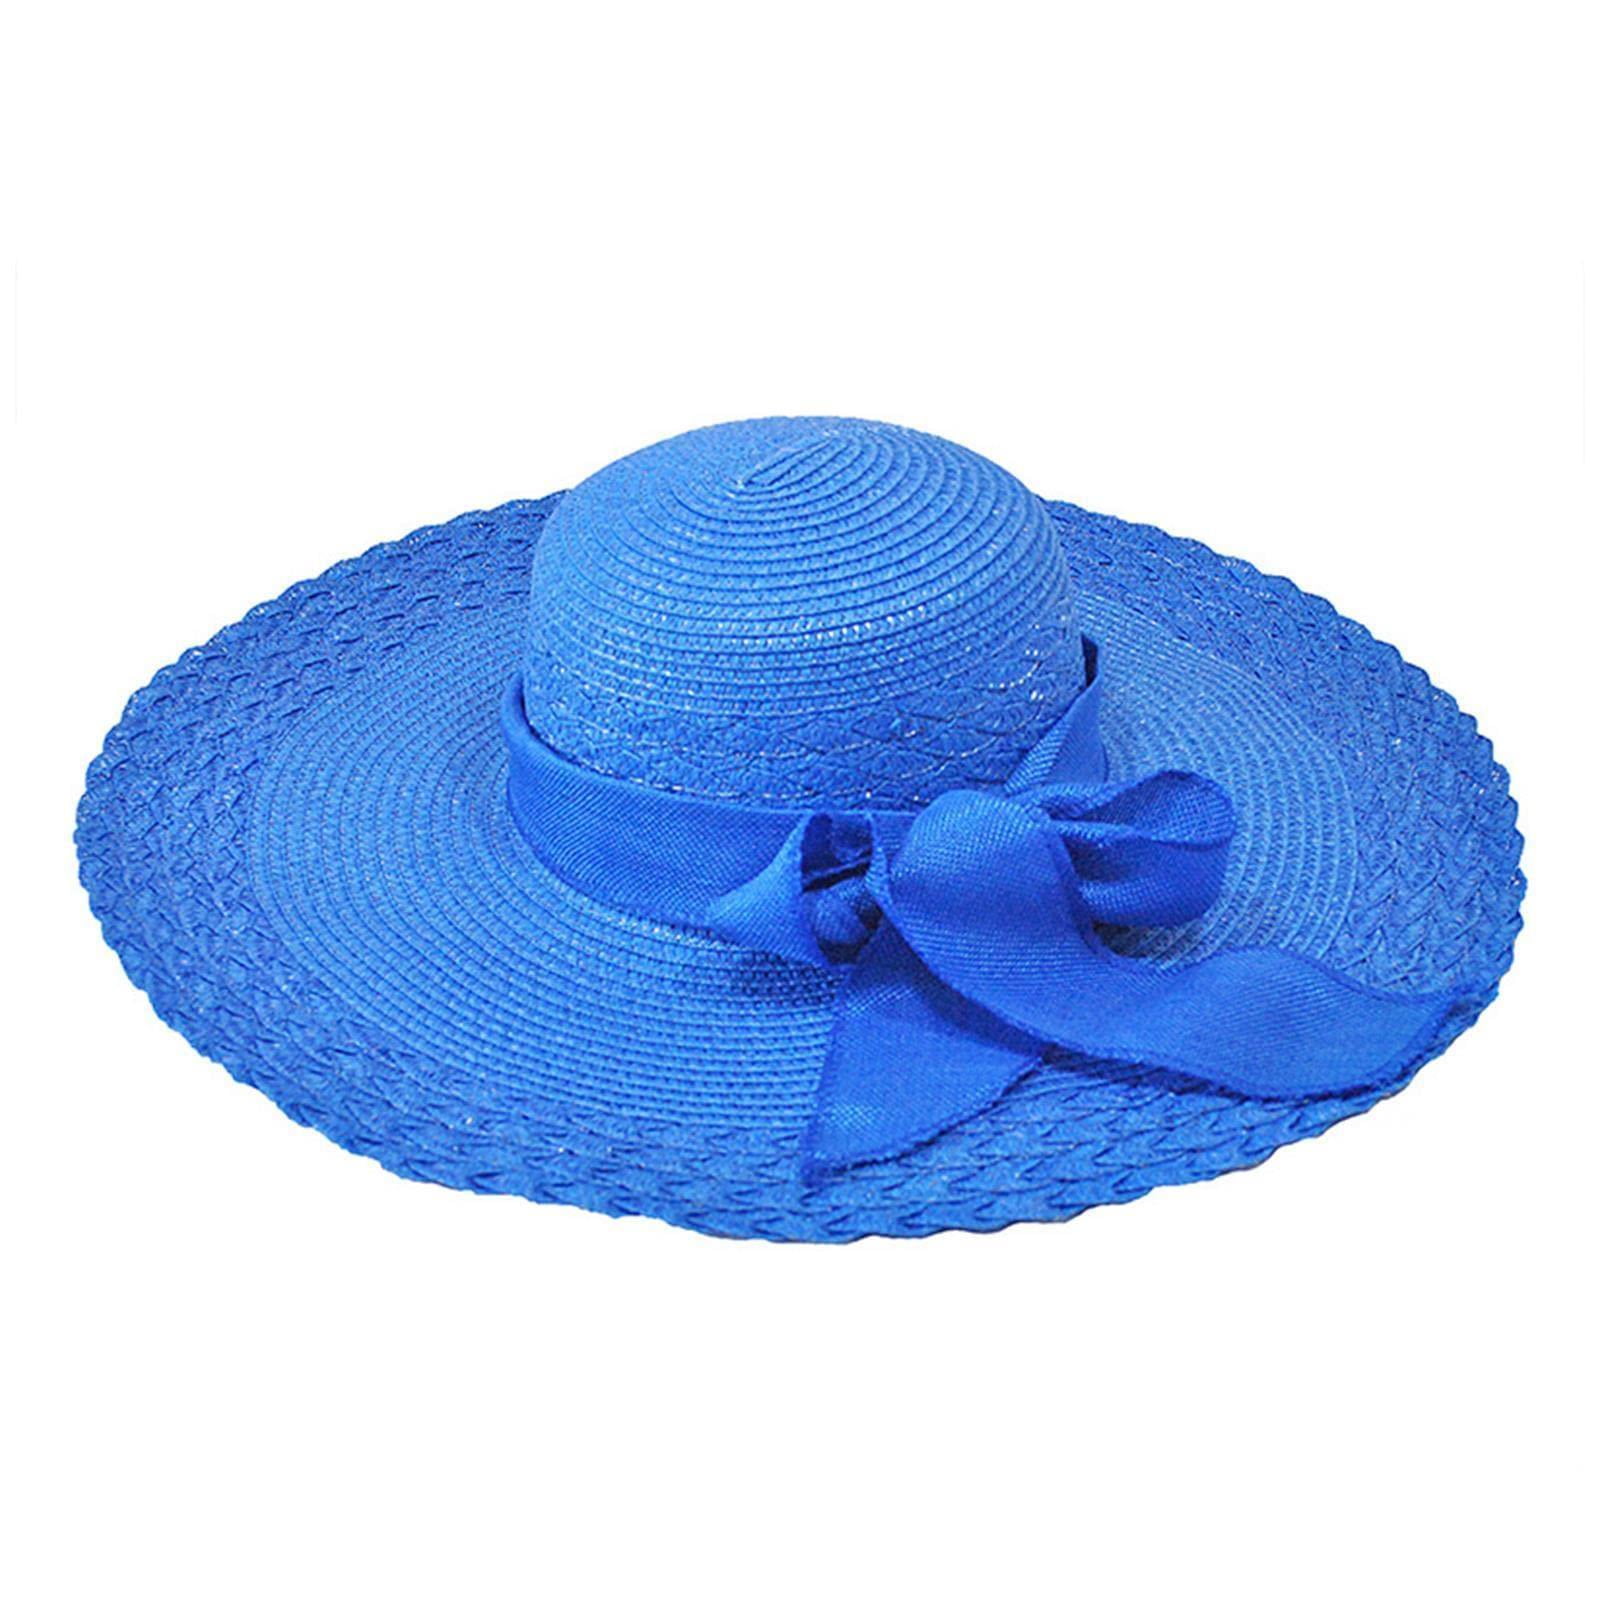 Bouquet Blue Flower Vintage Sun Hats for Women Outdoor Beach